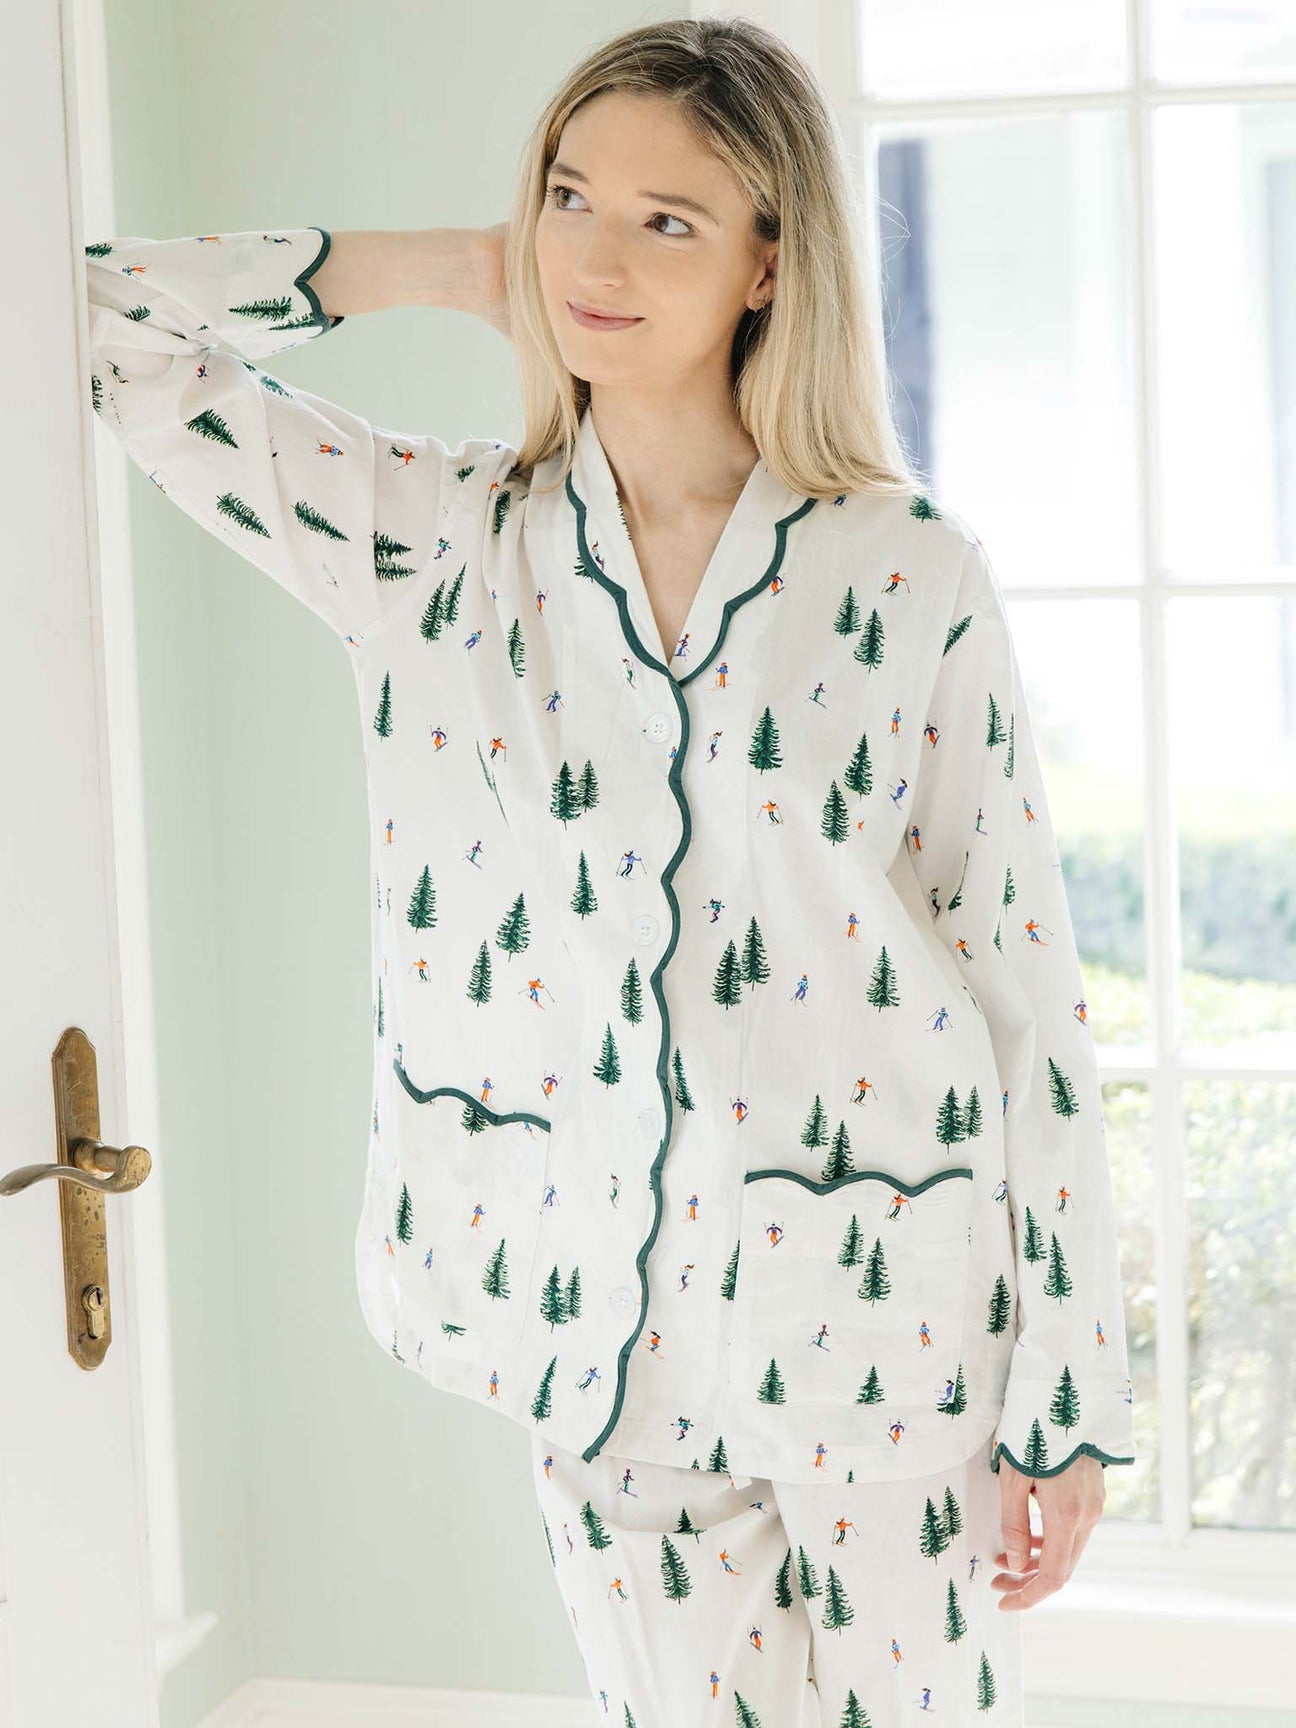 100% Cotton Women’s Pajamas - Heidi Carey